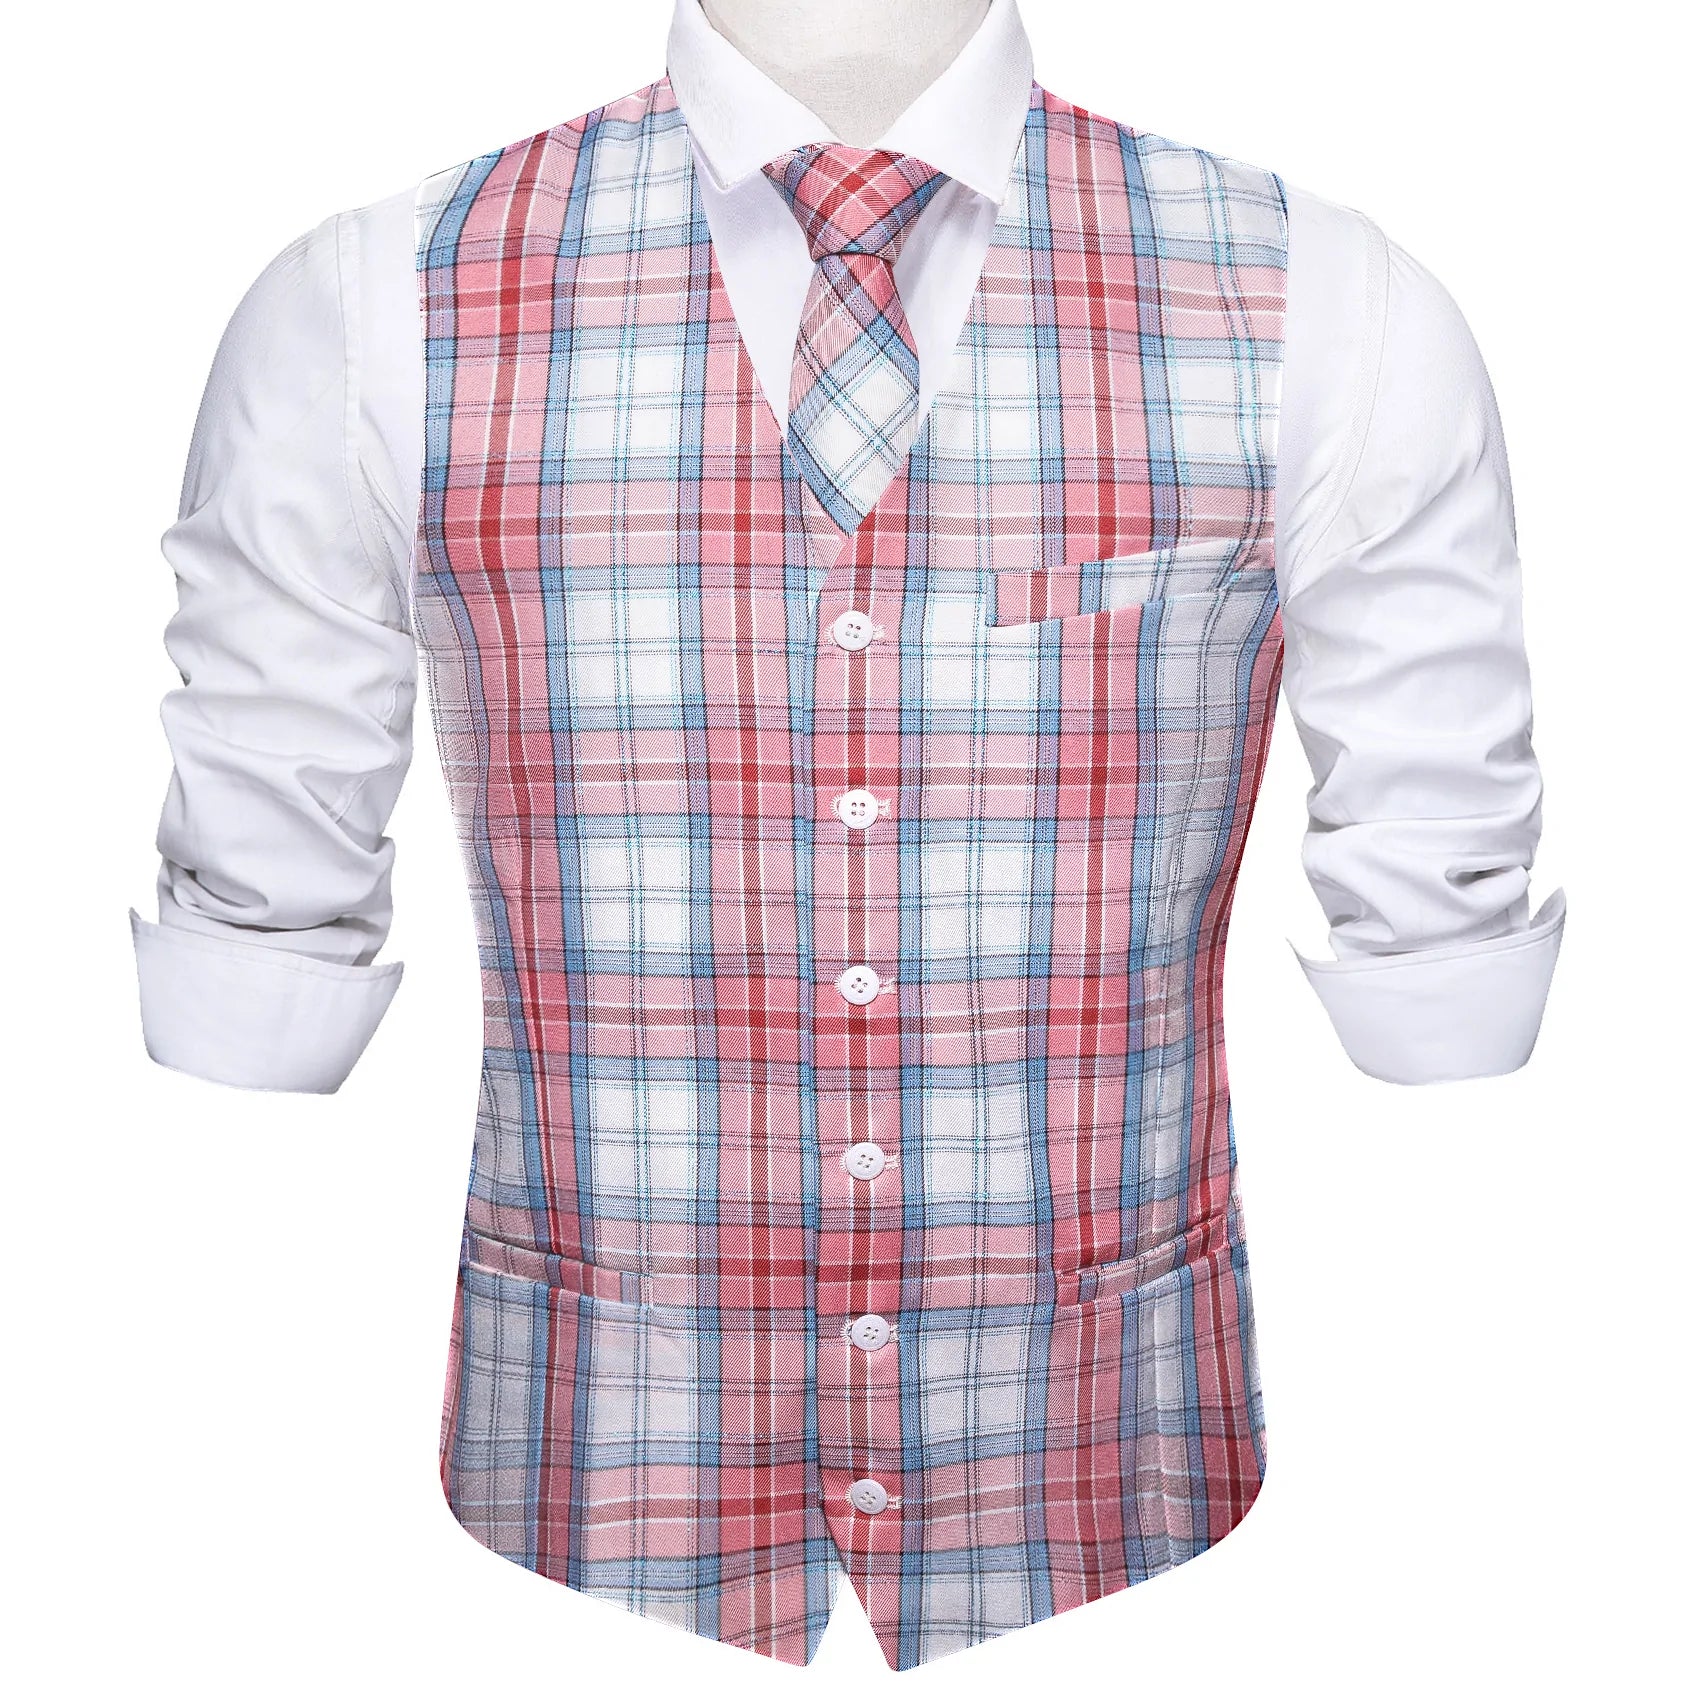 Barry.wang Men's Work Vest Pink Blue Plaid V-Neck Vest Necktie Set for Men Luxury